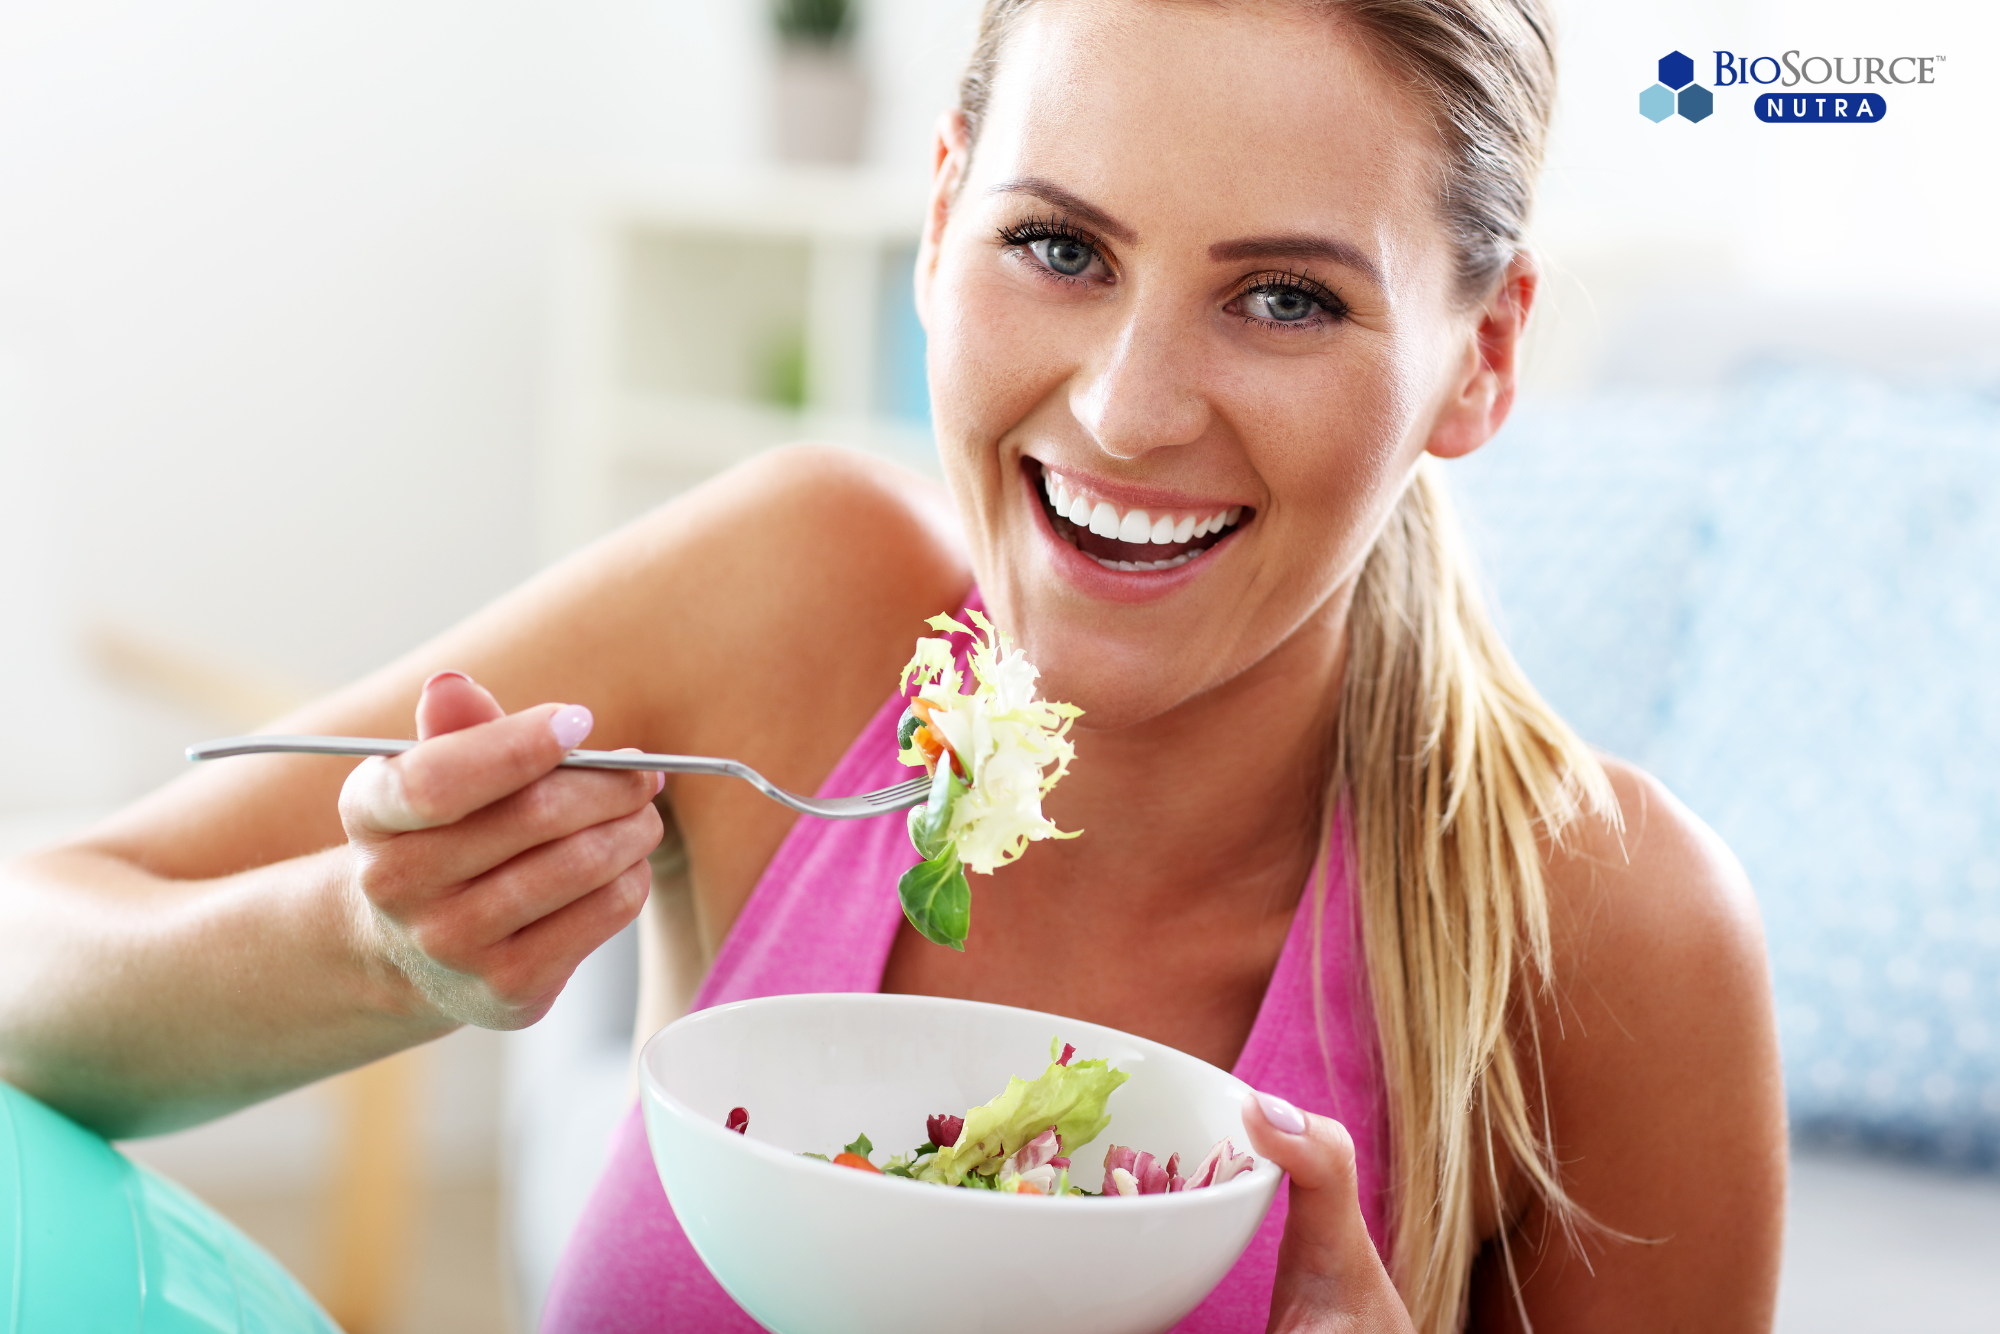 A smiling woman eats a salad